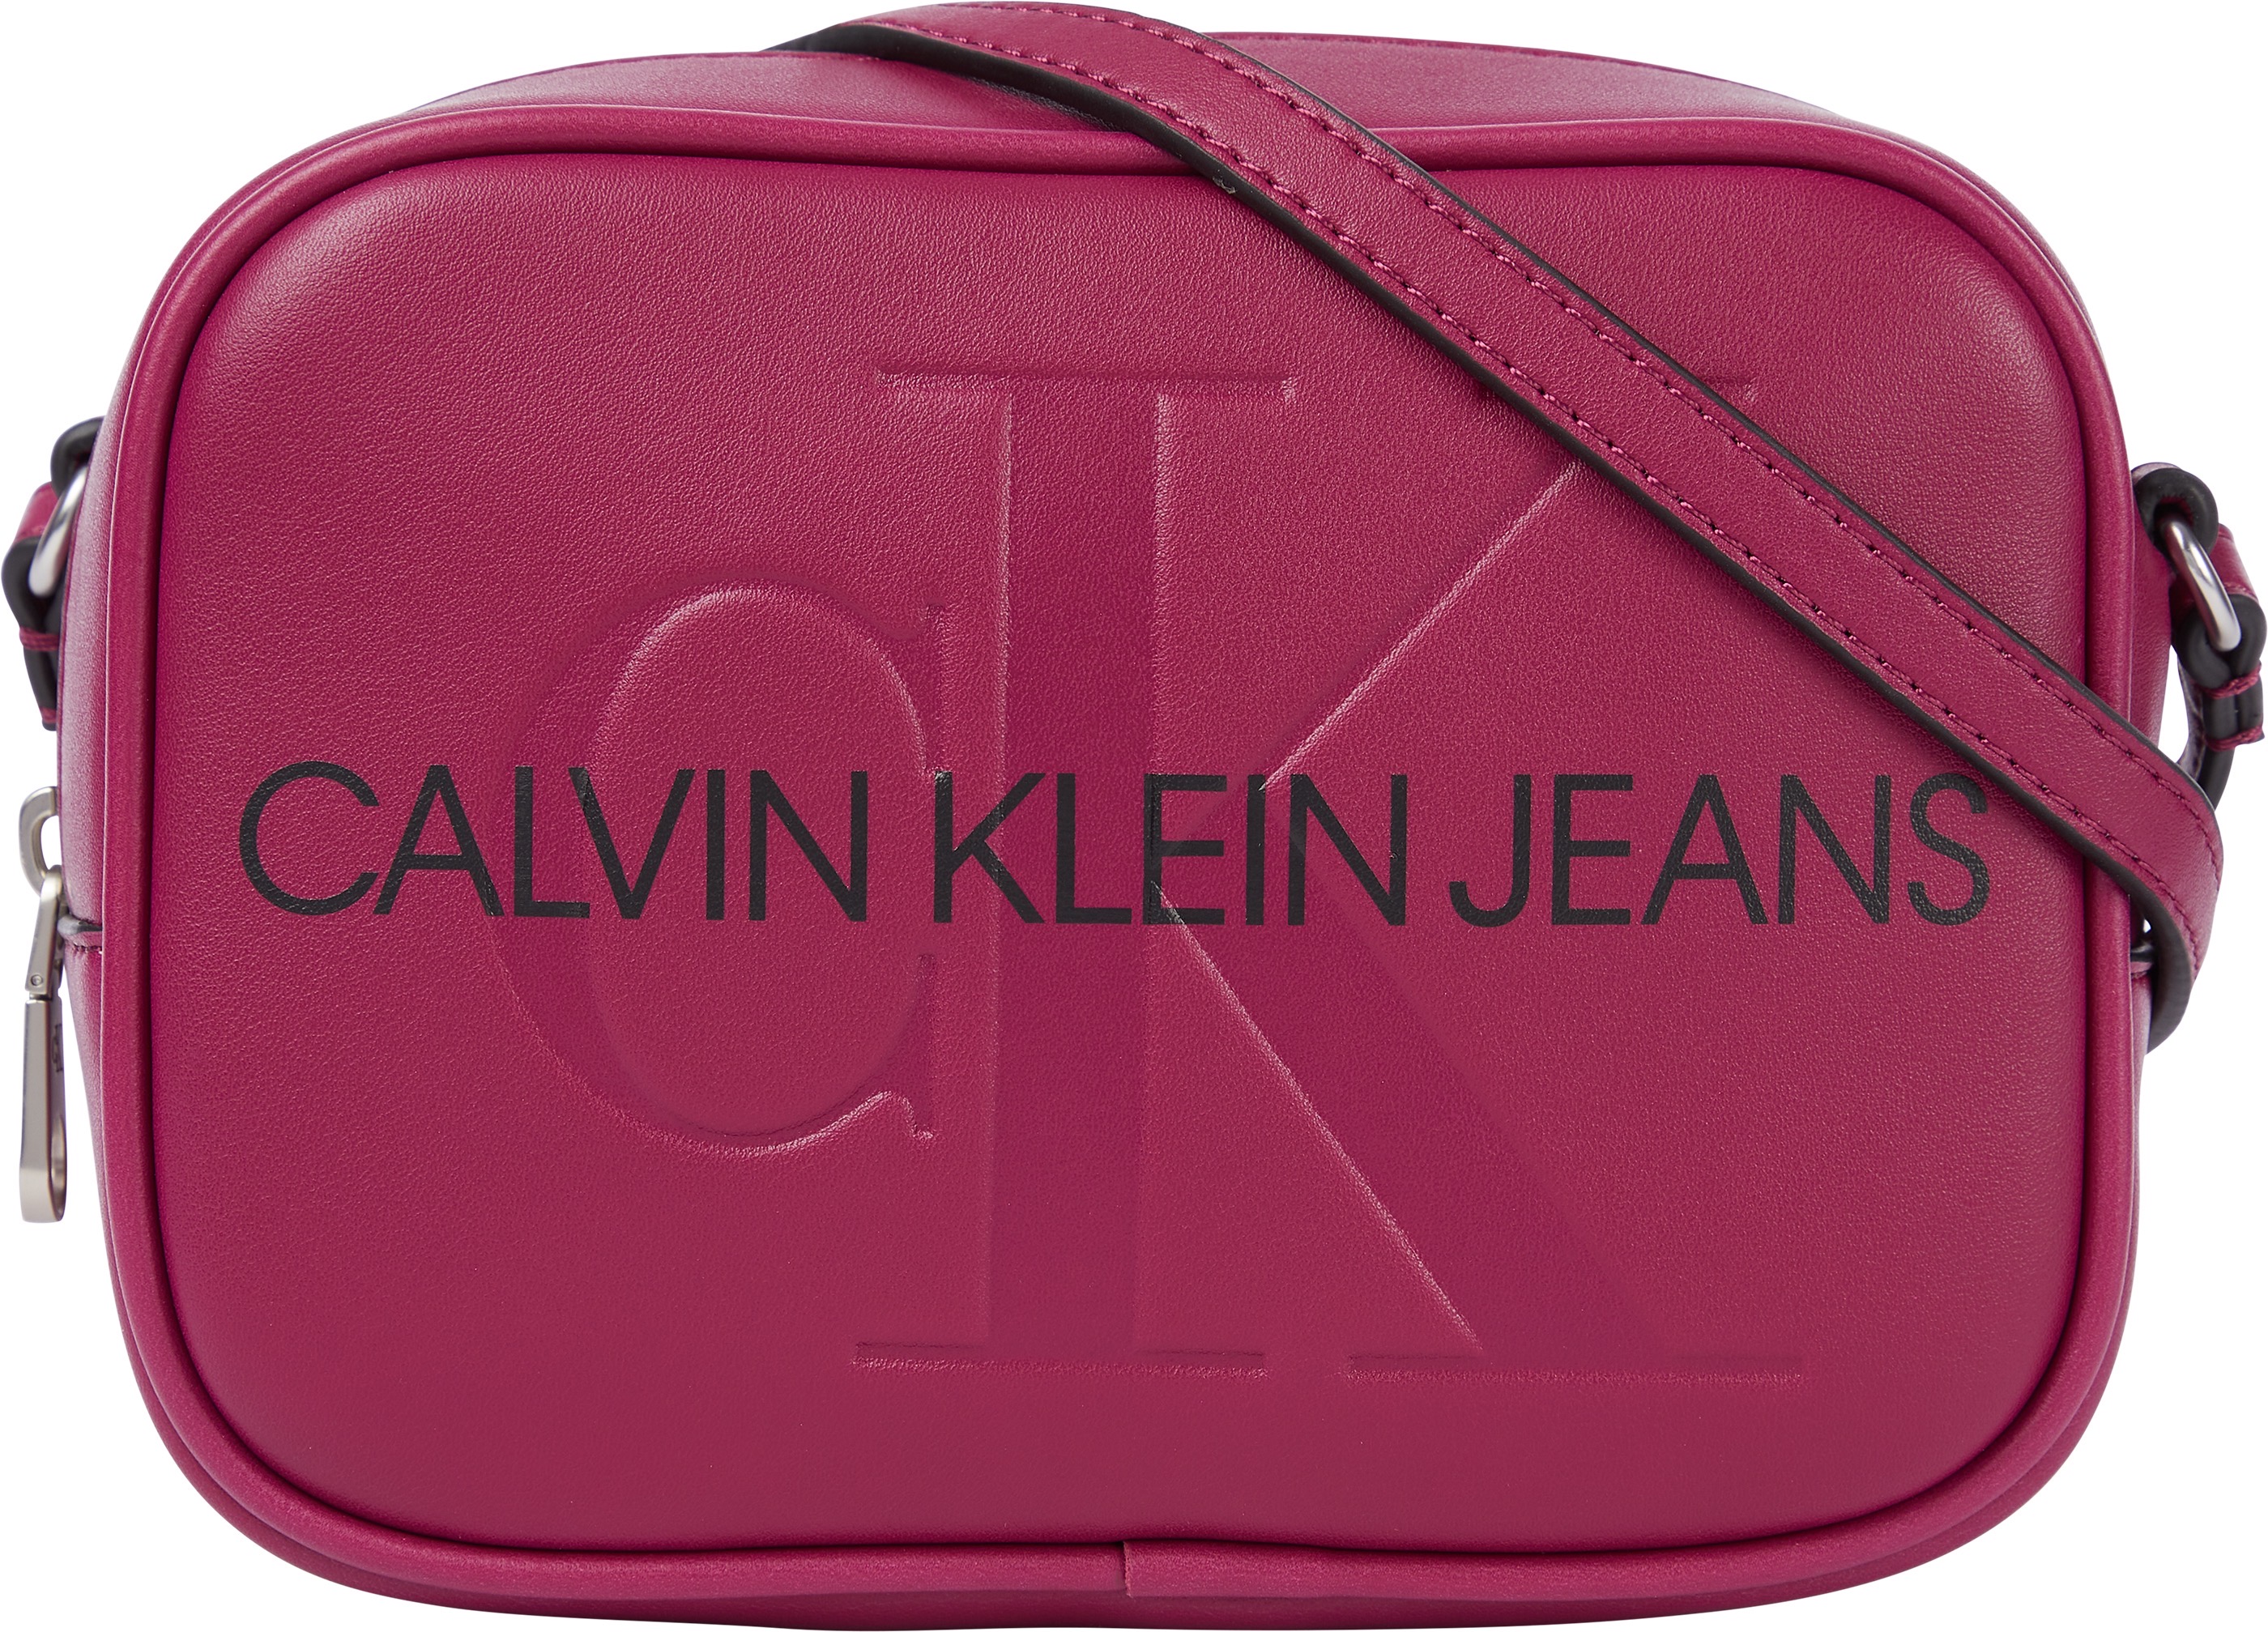 3ZwL6 Torby & plecaki Calvin Klein Jeans Torba na ramię w kolorze Ciemnoczerwonym 